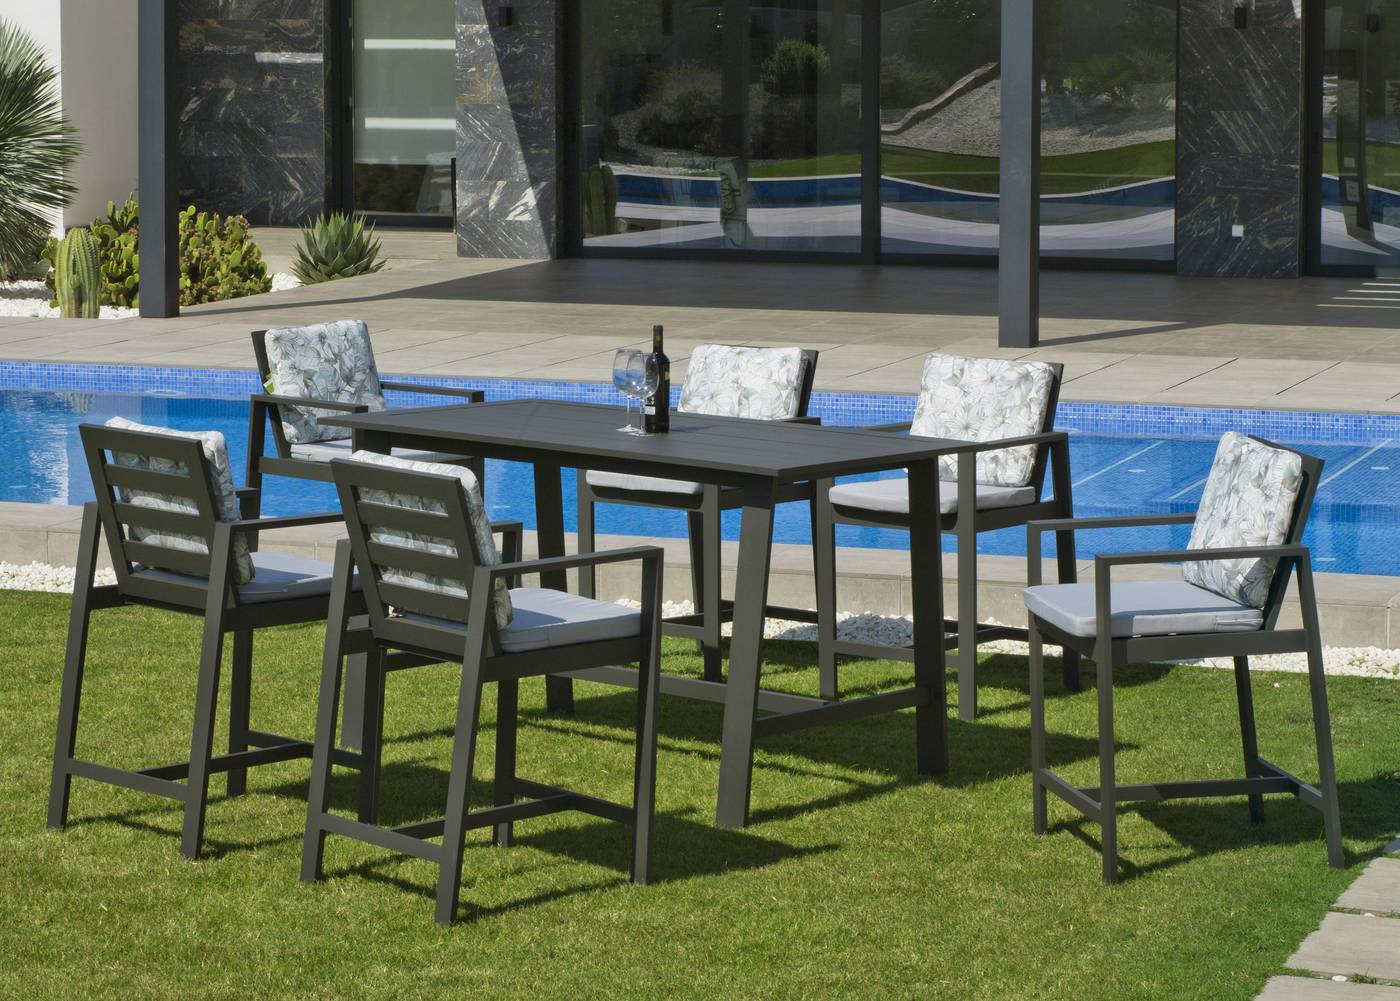 Sillón Coctel Aluminio Luxe Marlet - Lujoso sillón alto de coctel, para jardín o terraza. Disponible en color blanco, antracita, champagne, plata o marrón.